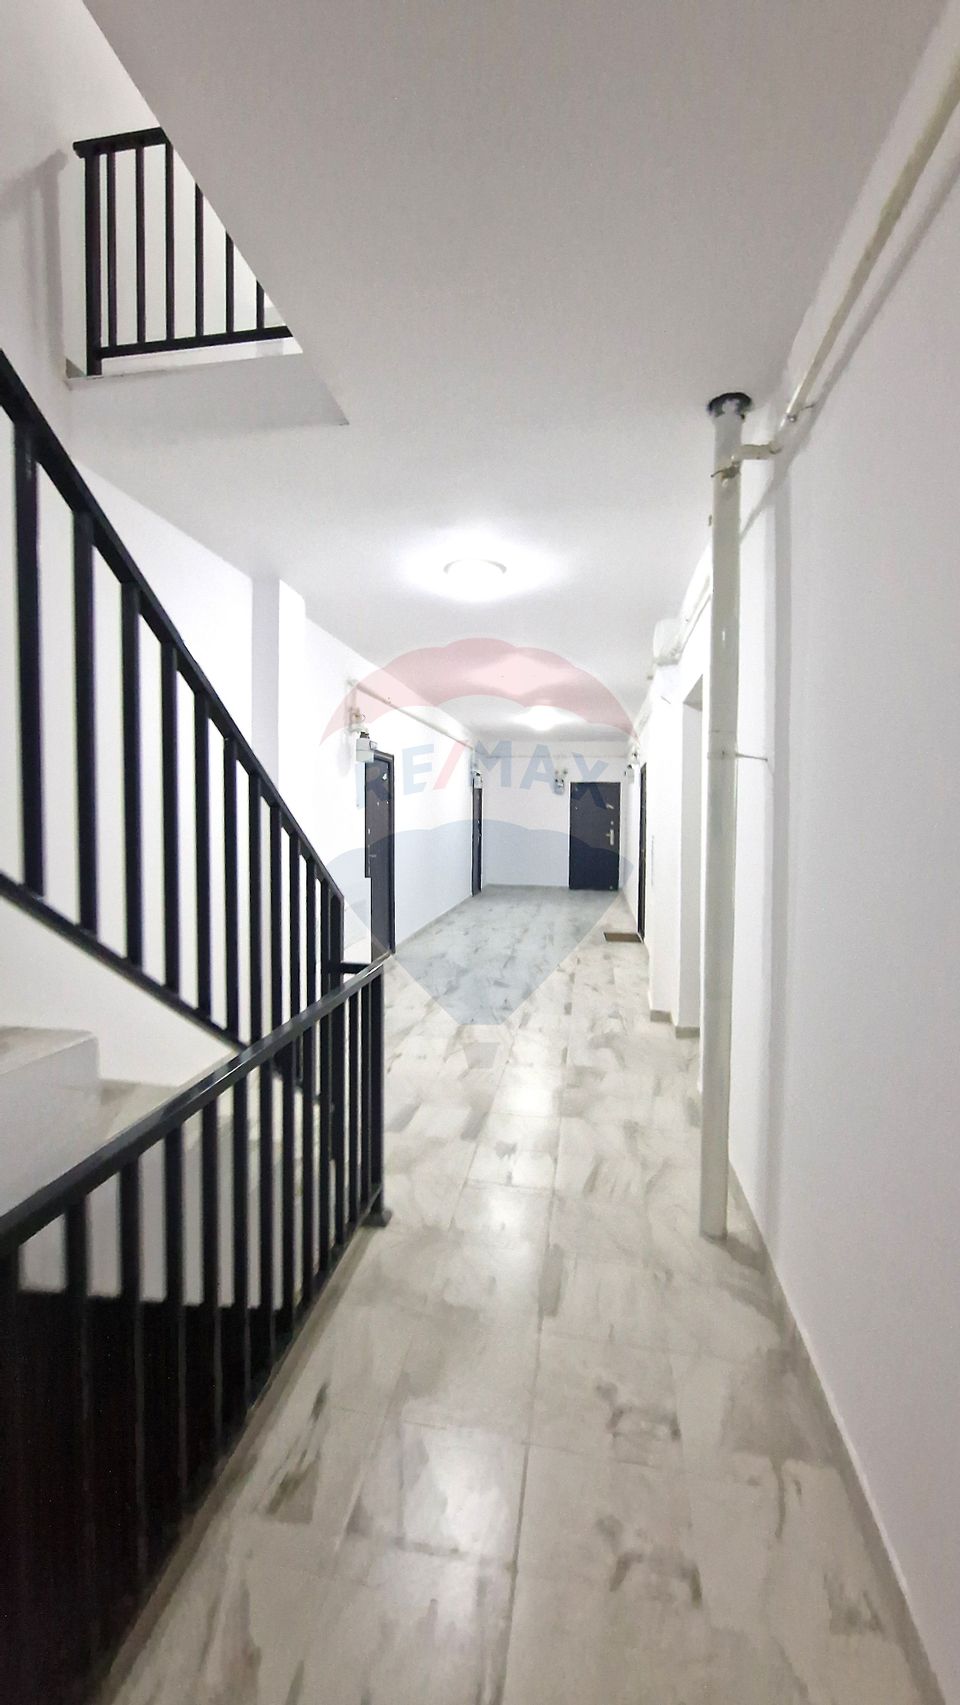 Apartament nou de vanzare Bragadiru, de la 935 euro/mp